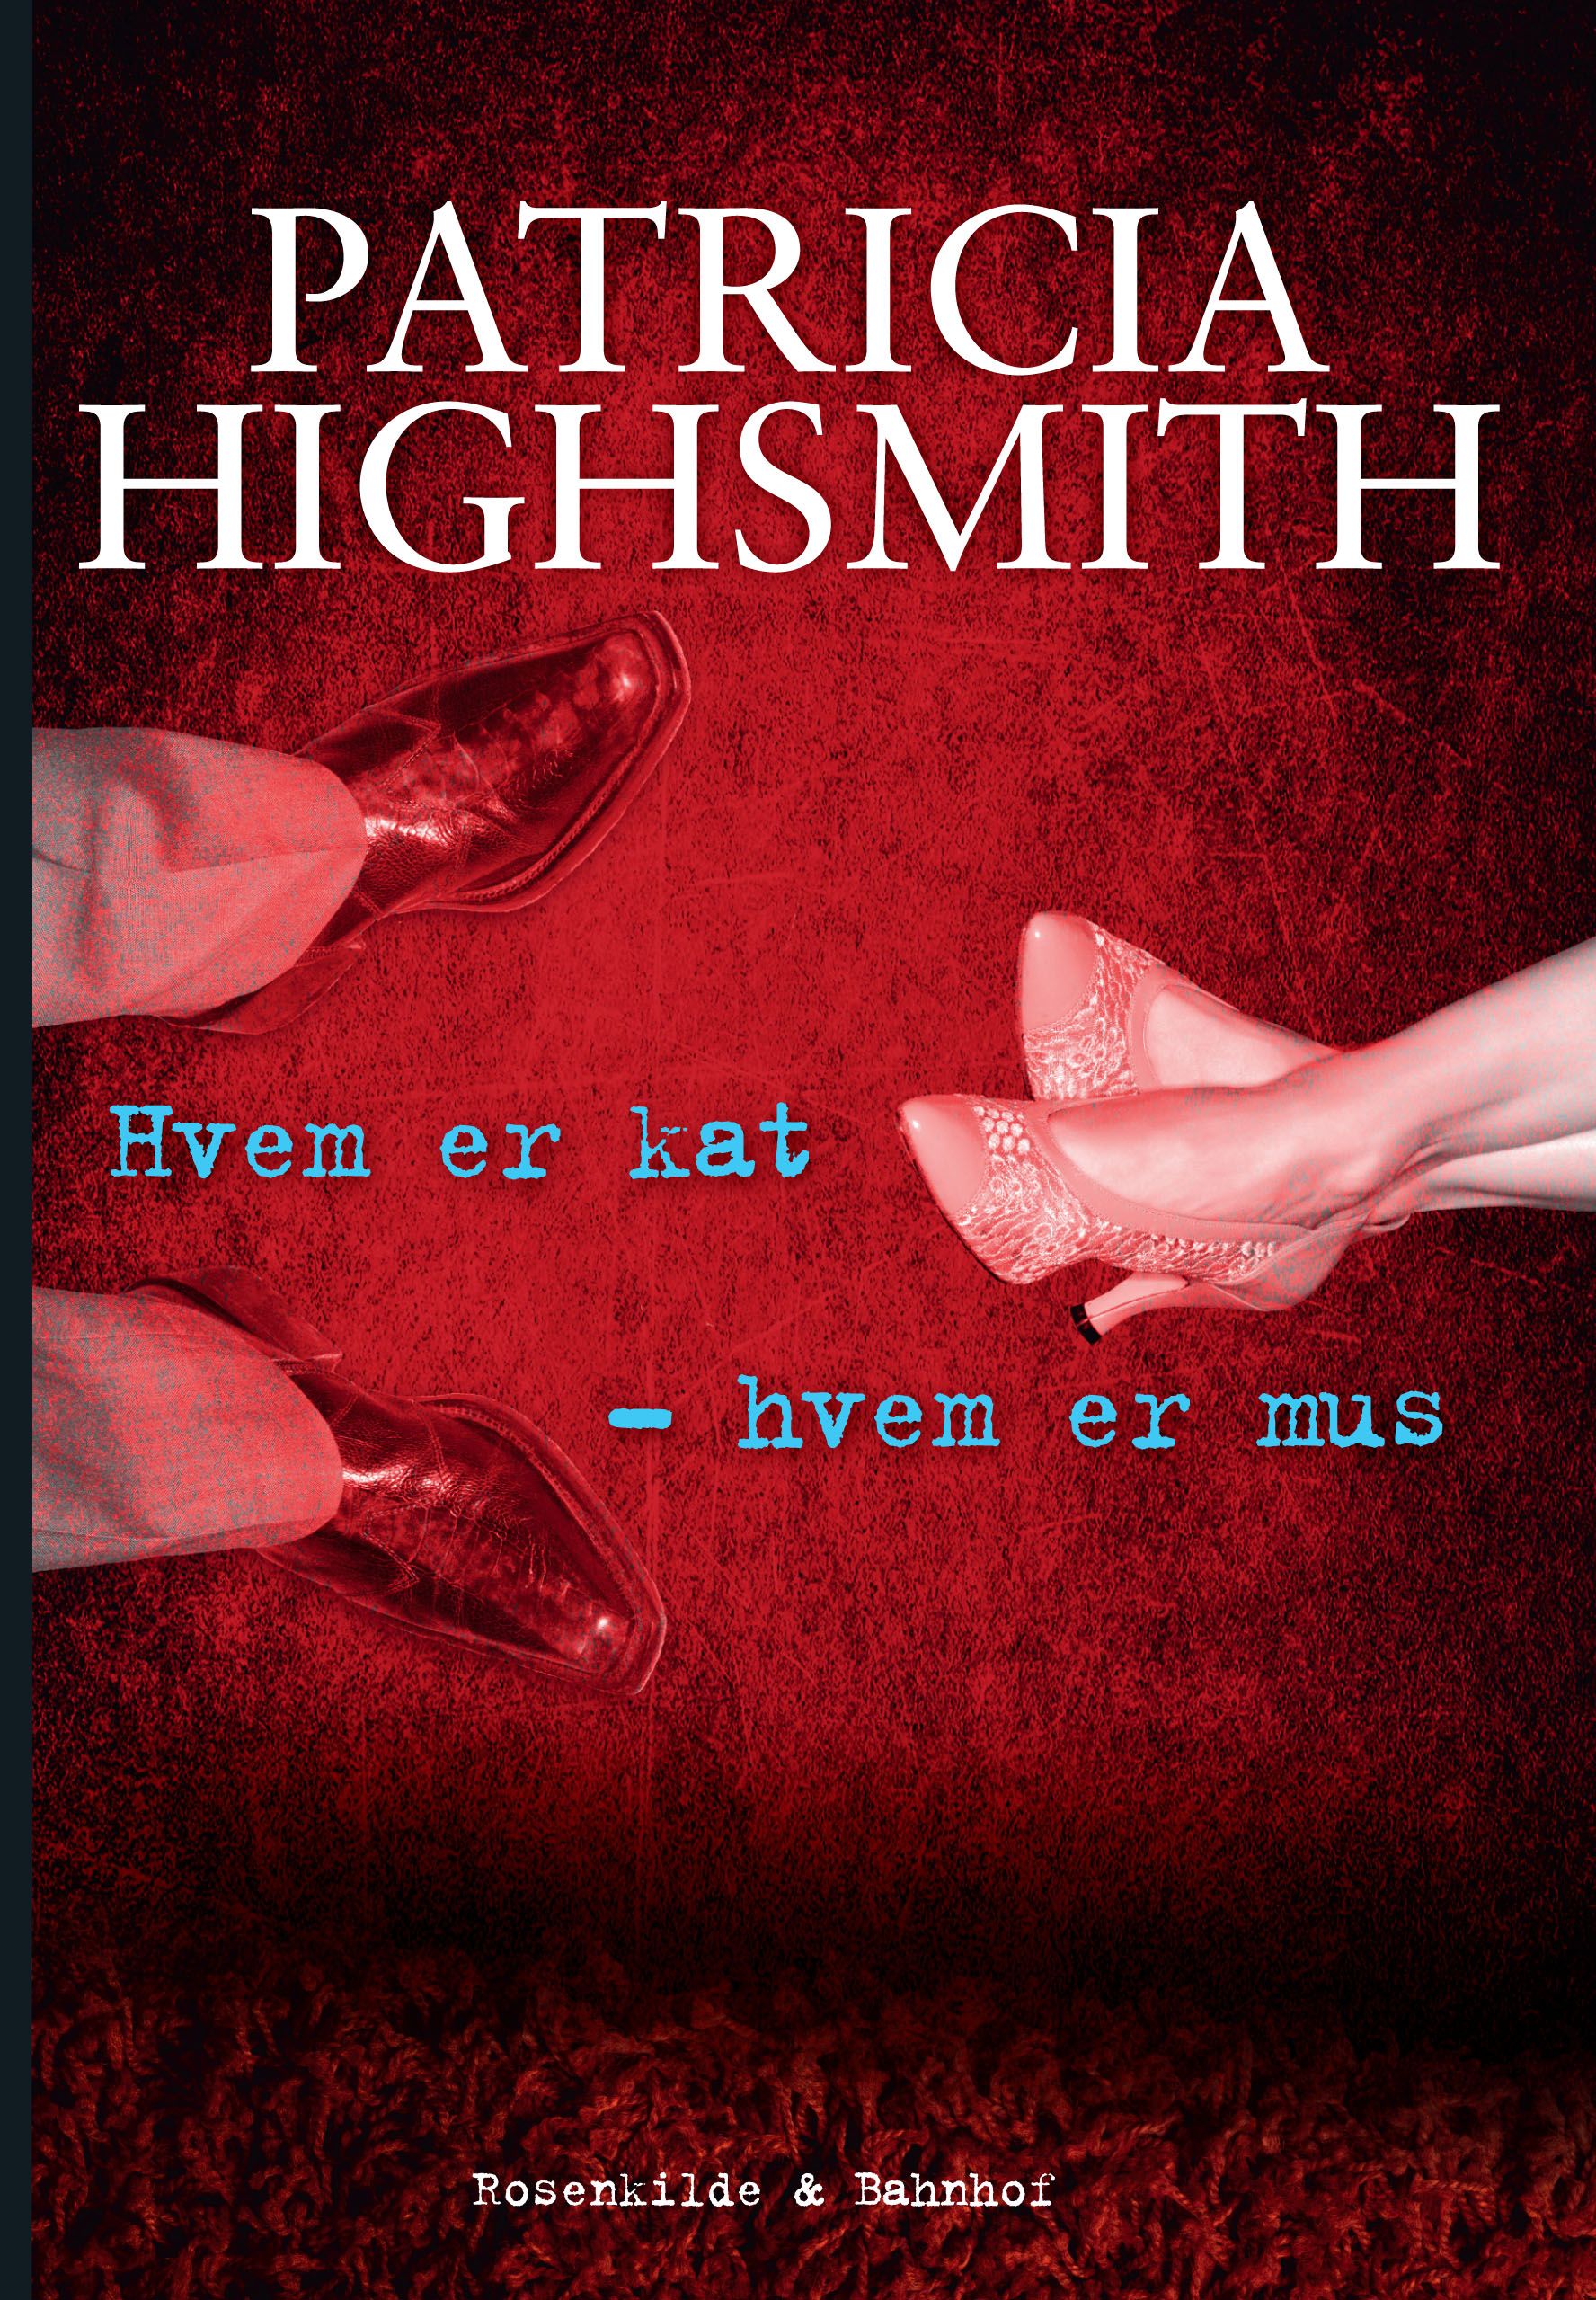 Hvem er kat - hvem er mus. En Patricia Highsmith krimi., e-bog af Patricia Highsmith